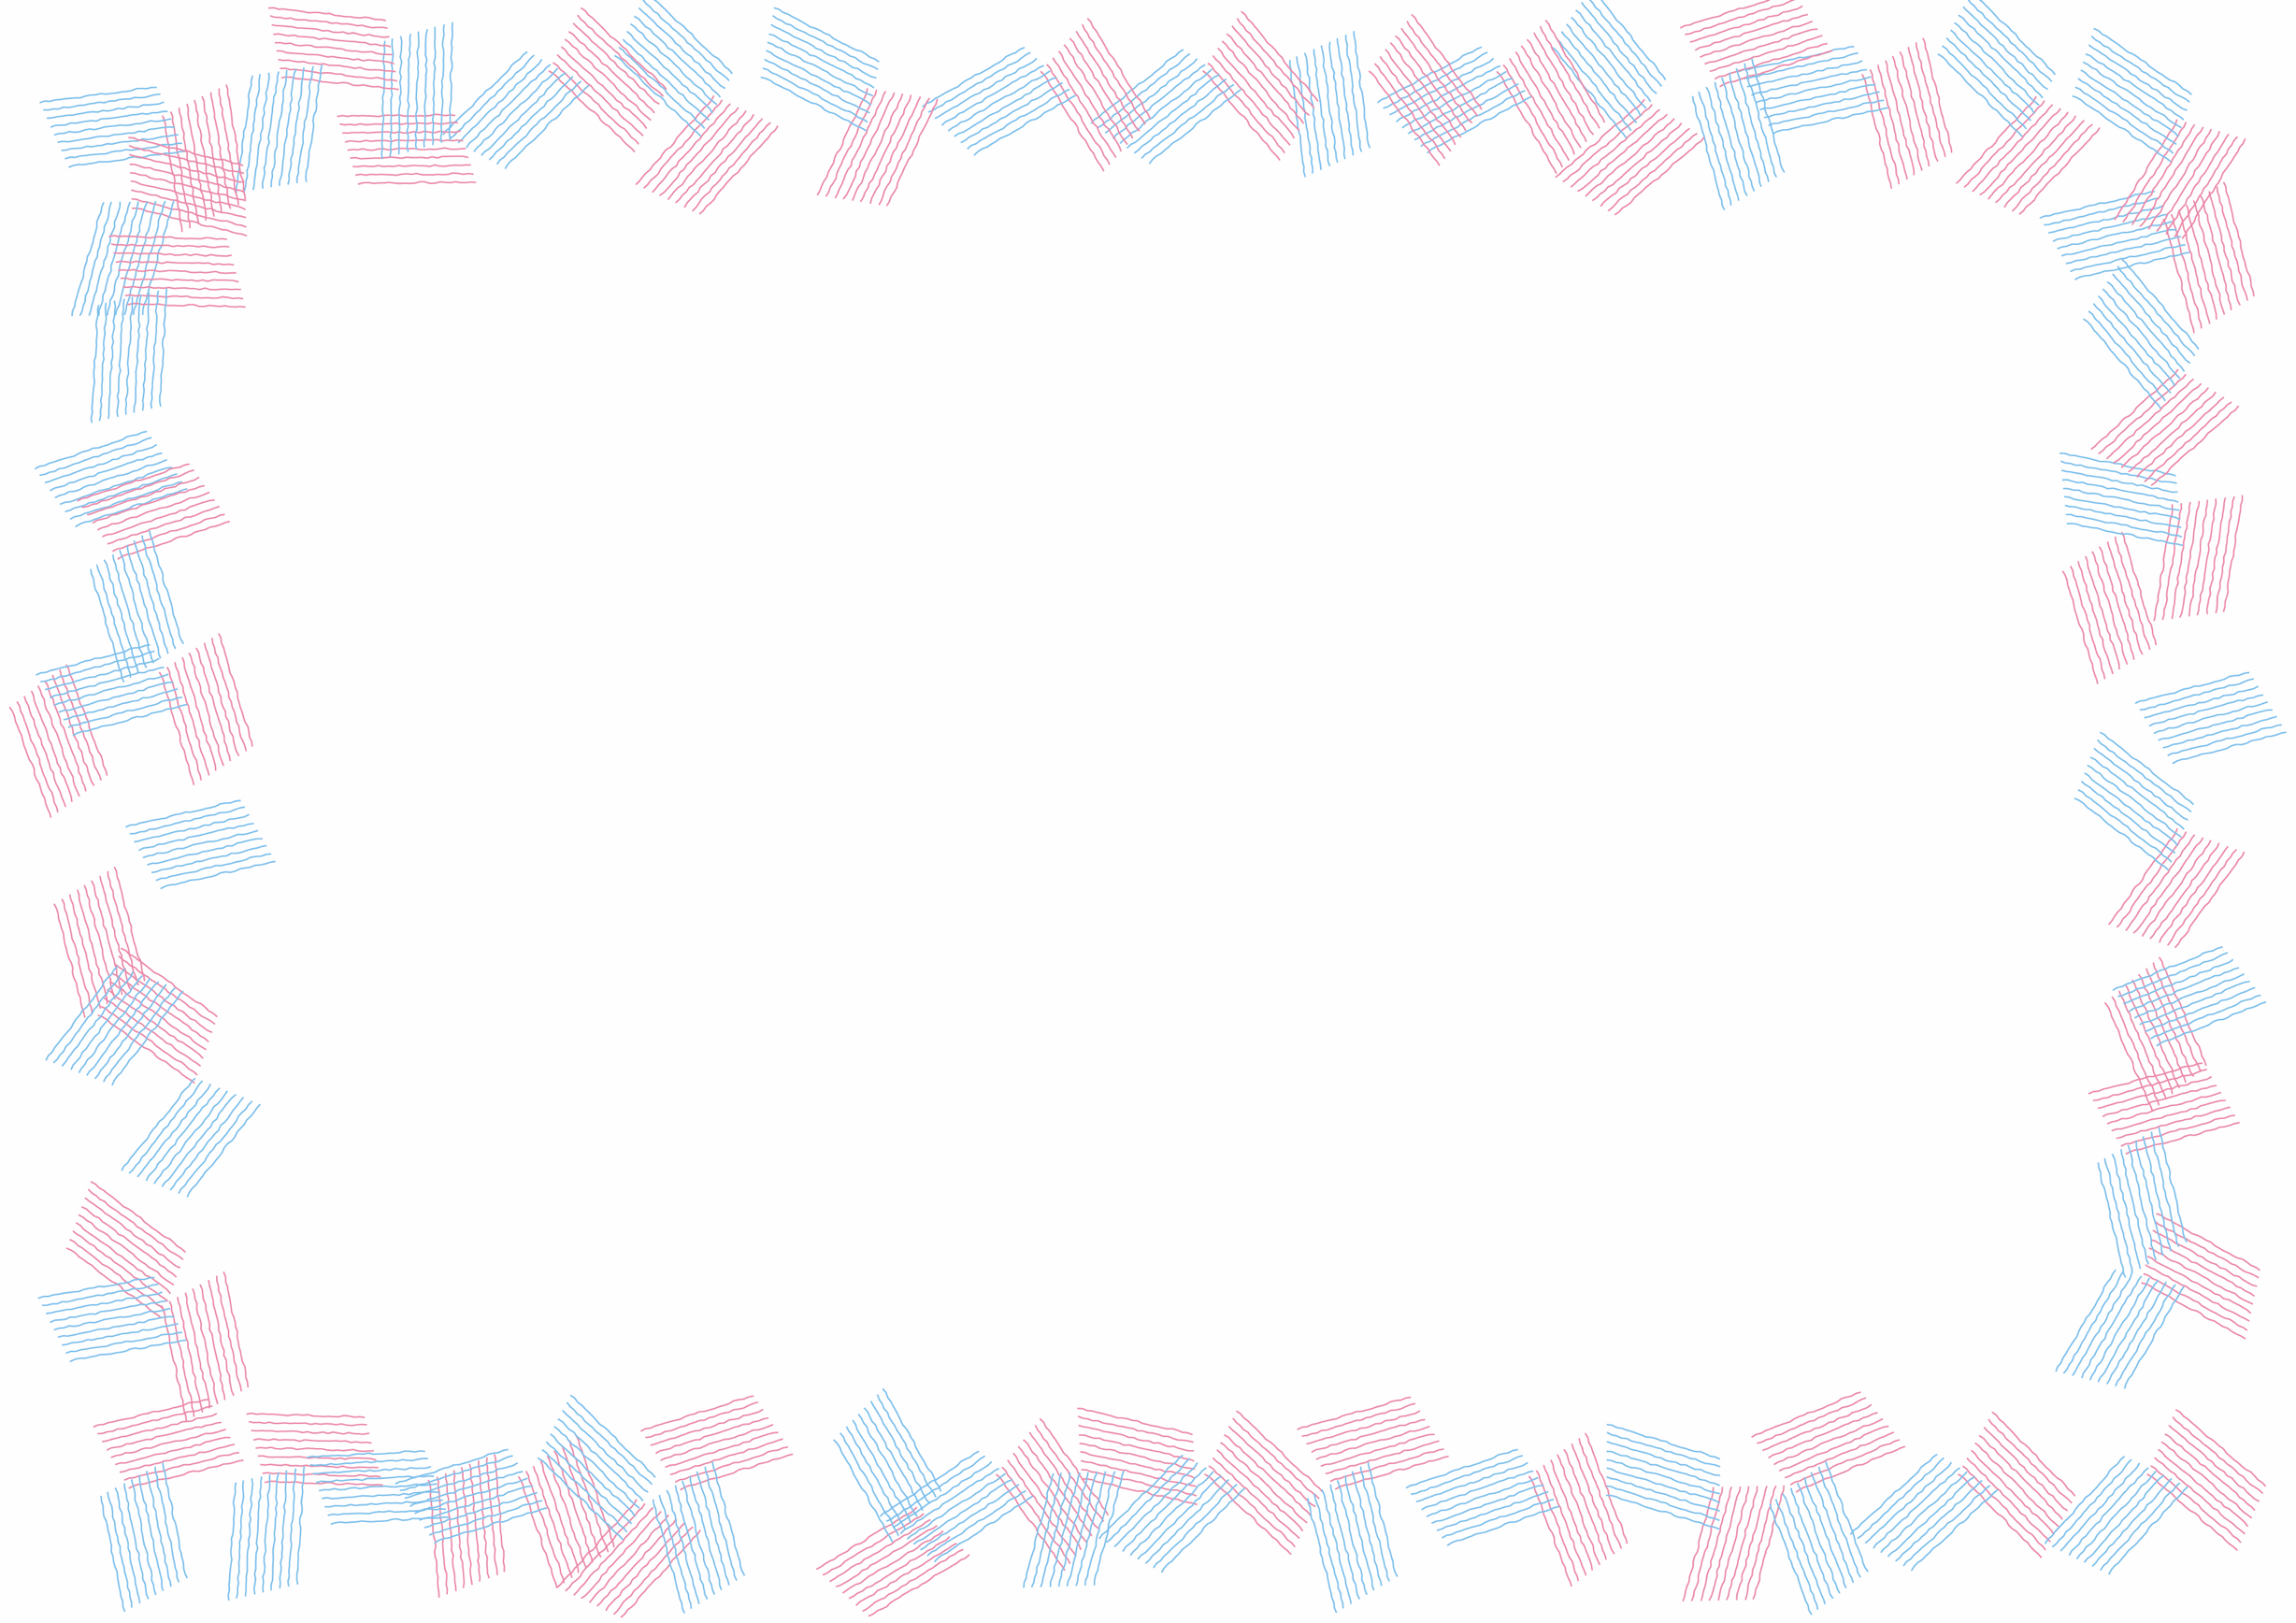 可愛いイラスト無料 背景 シンプル フレーム ピンク色 水色 Free Illustration Background Simple Frame Pink Light Blue 公式 イラスト素材サイト イラストダウンロード